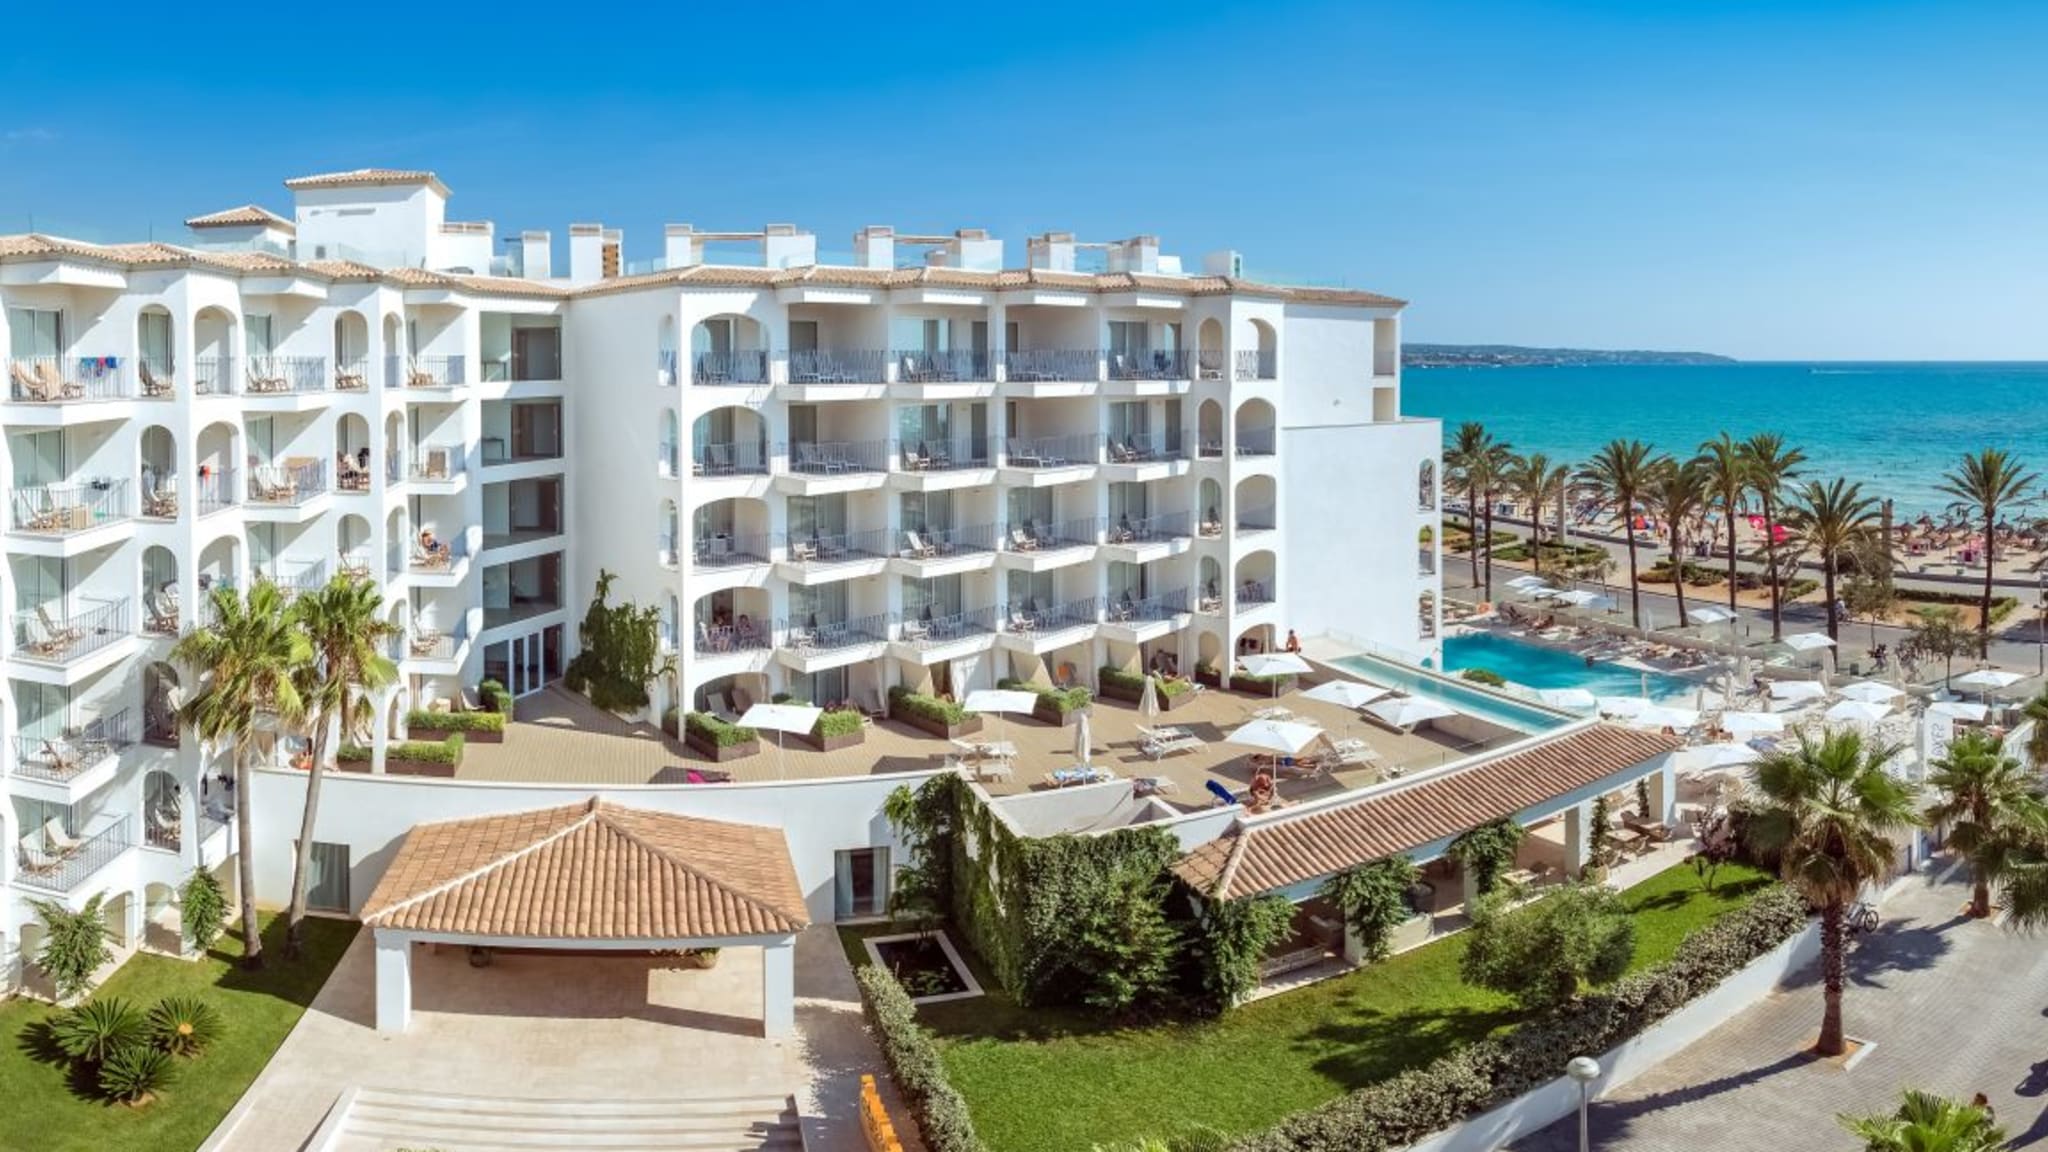 Vom Hotel geht es direkt an die Playa de Palma. Bild vom Hotelier, August 2018.